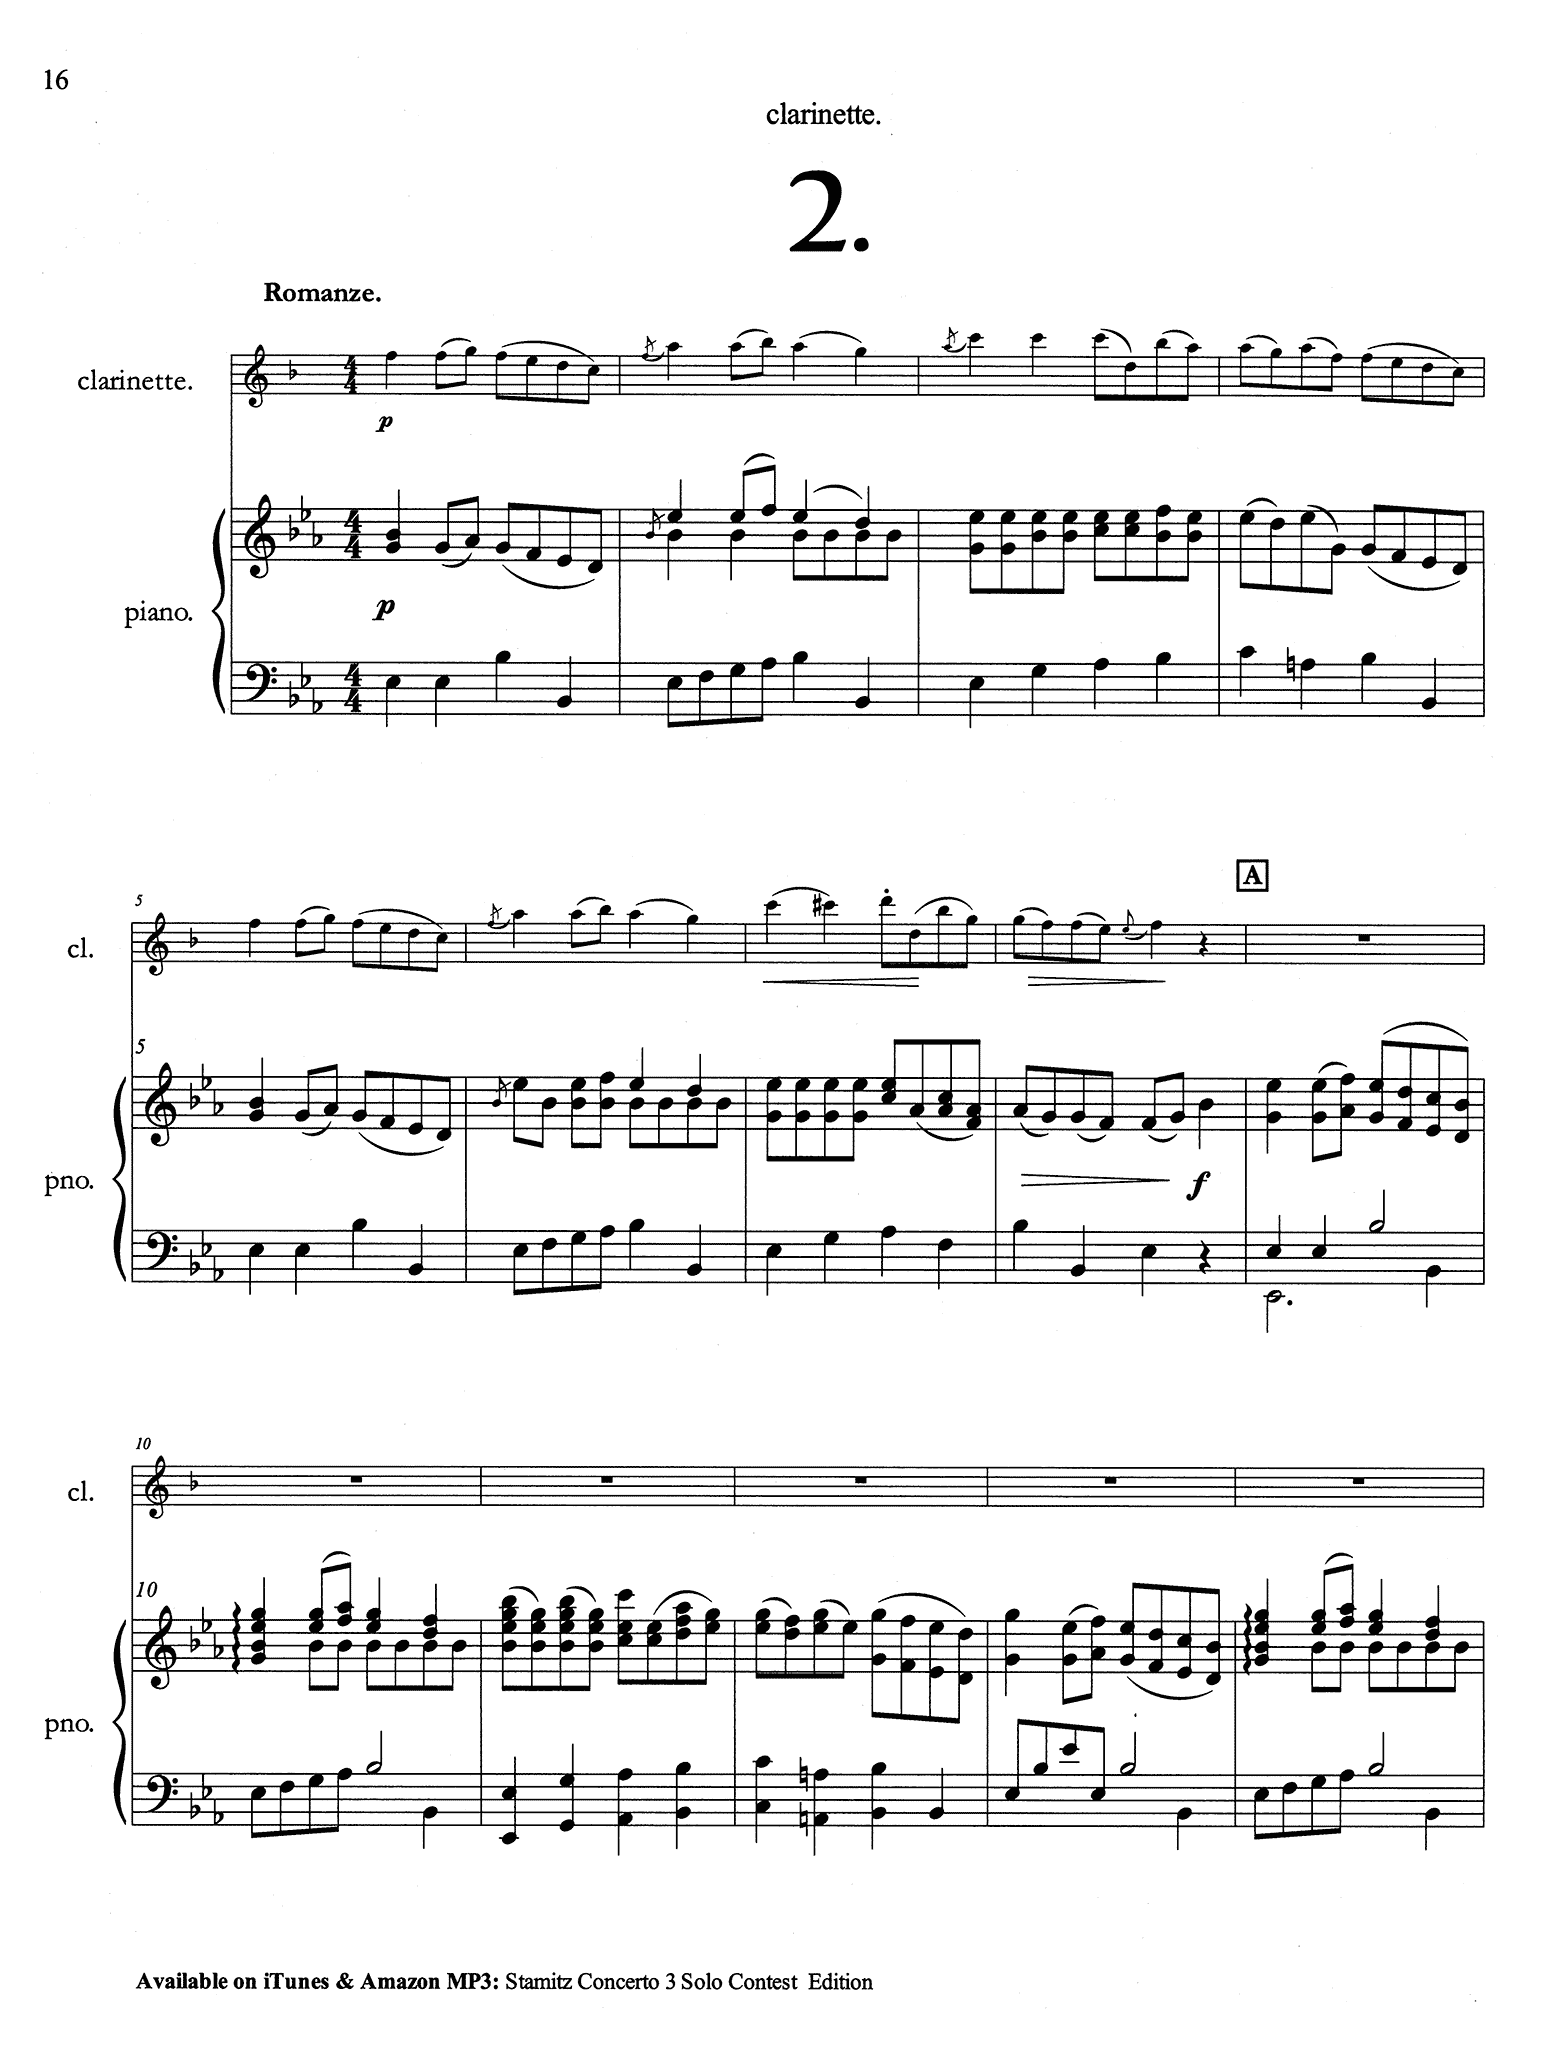 Stamitz Clarinet Concerto No. 3 Solo Contest Edition - Movement 2